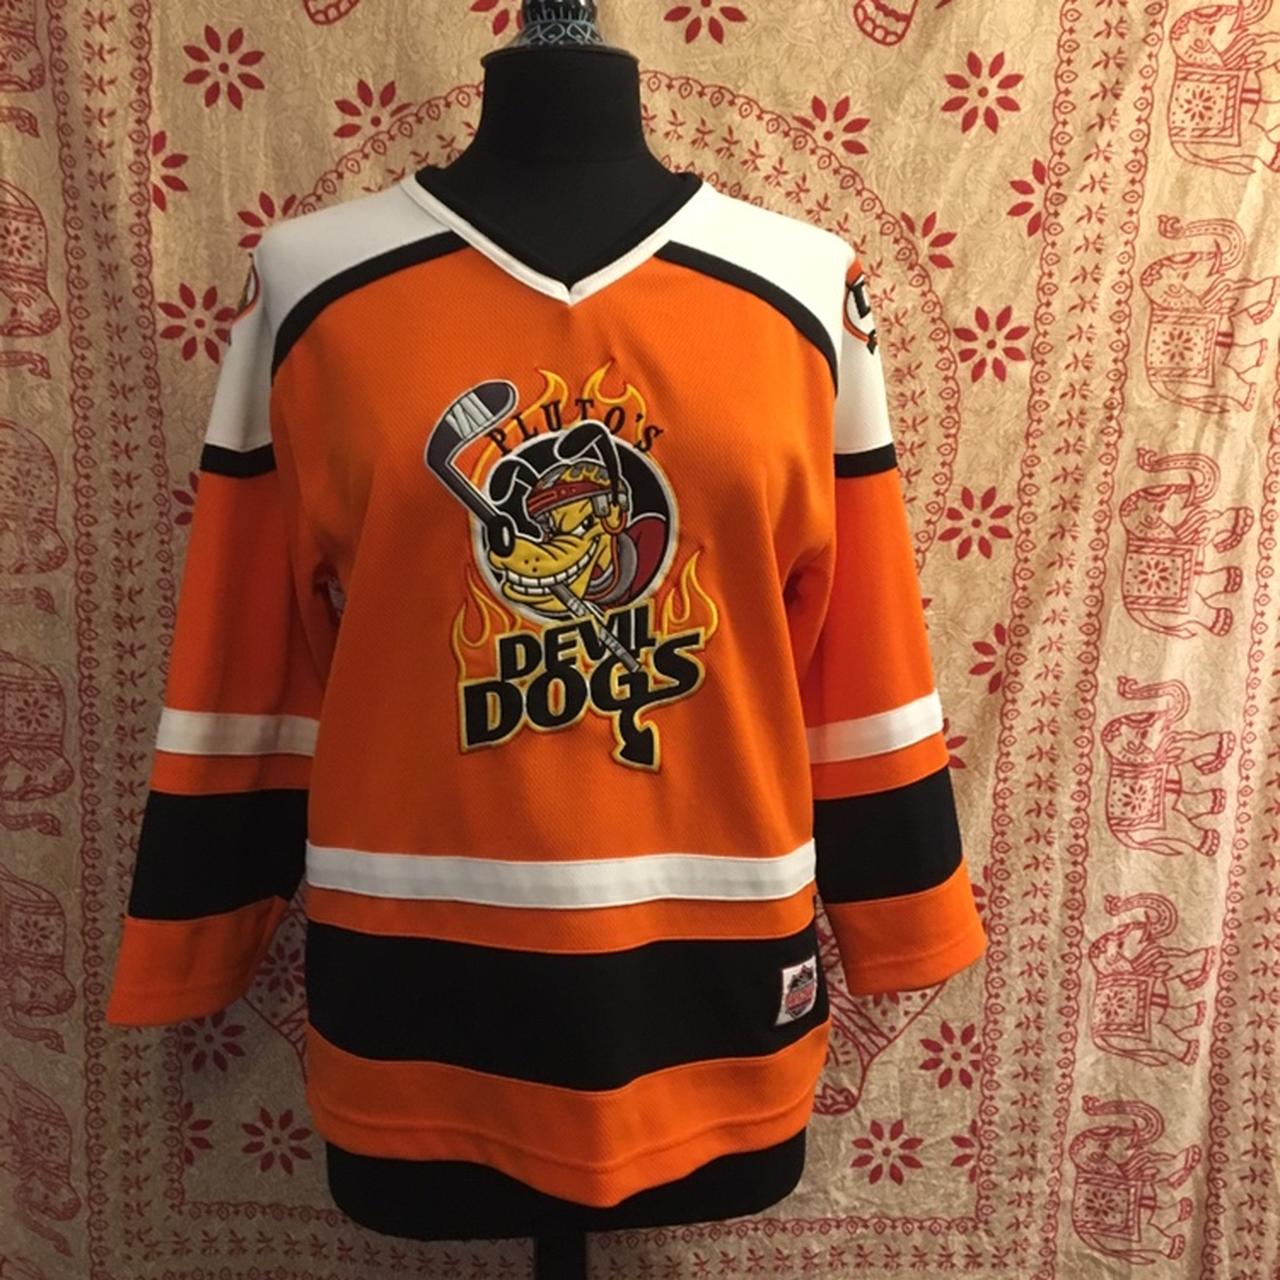 Vintage Disney Pluto Devil Dogs Hockey Jersey K9 Youth size XL 14-16 sewn